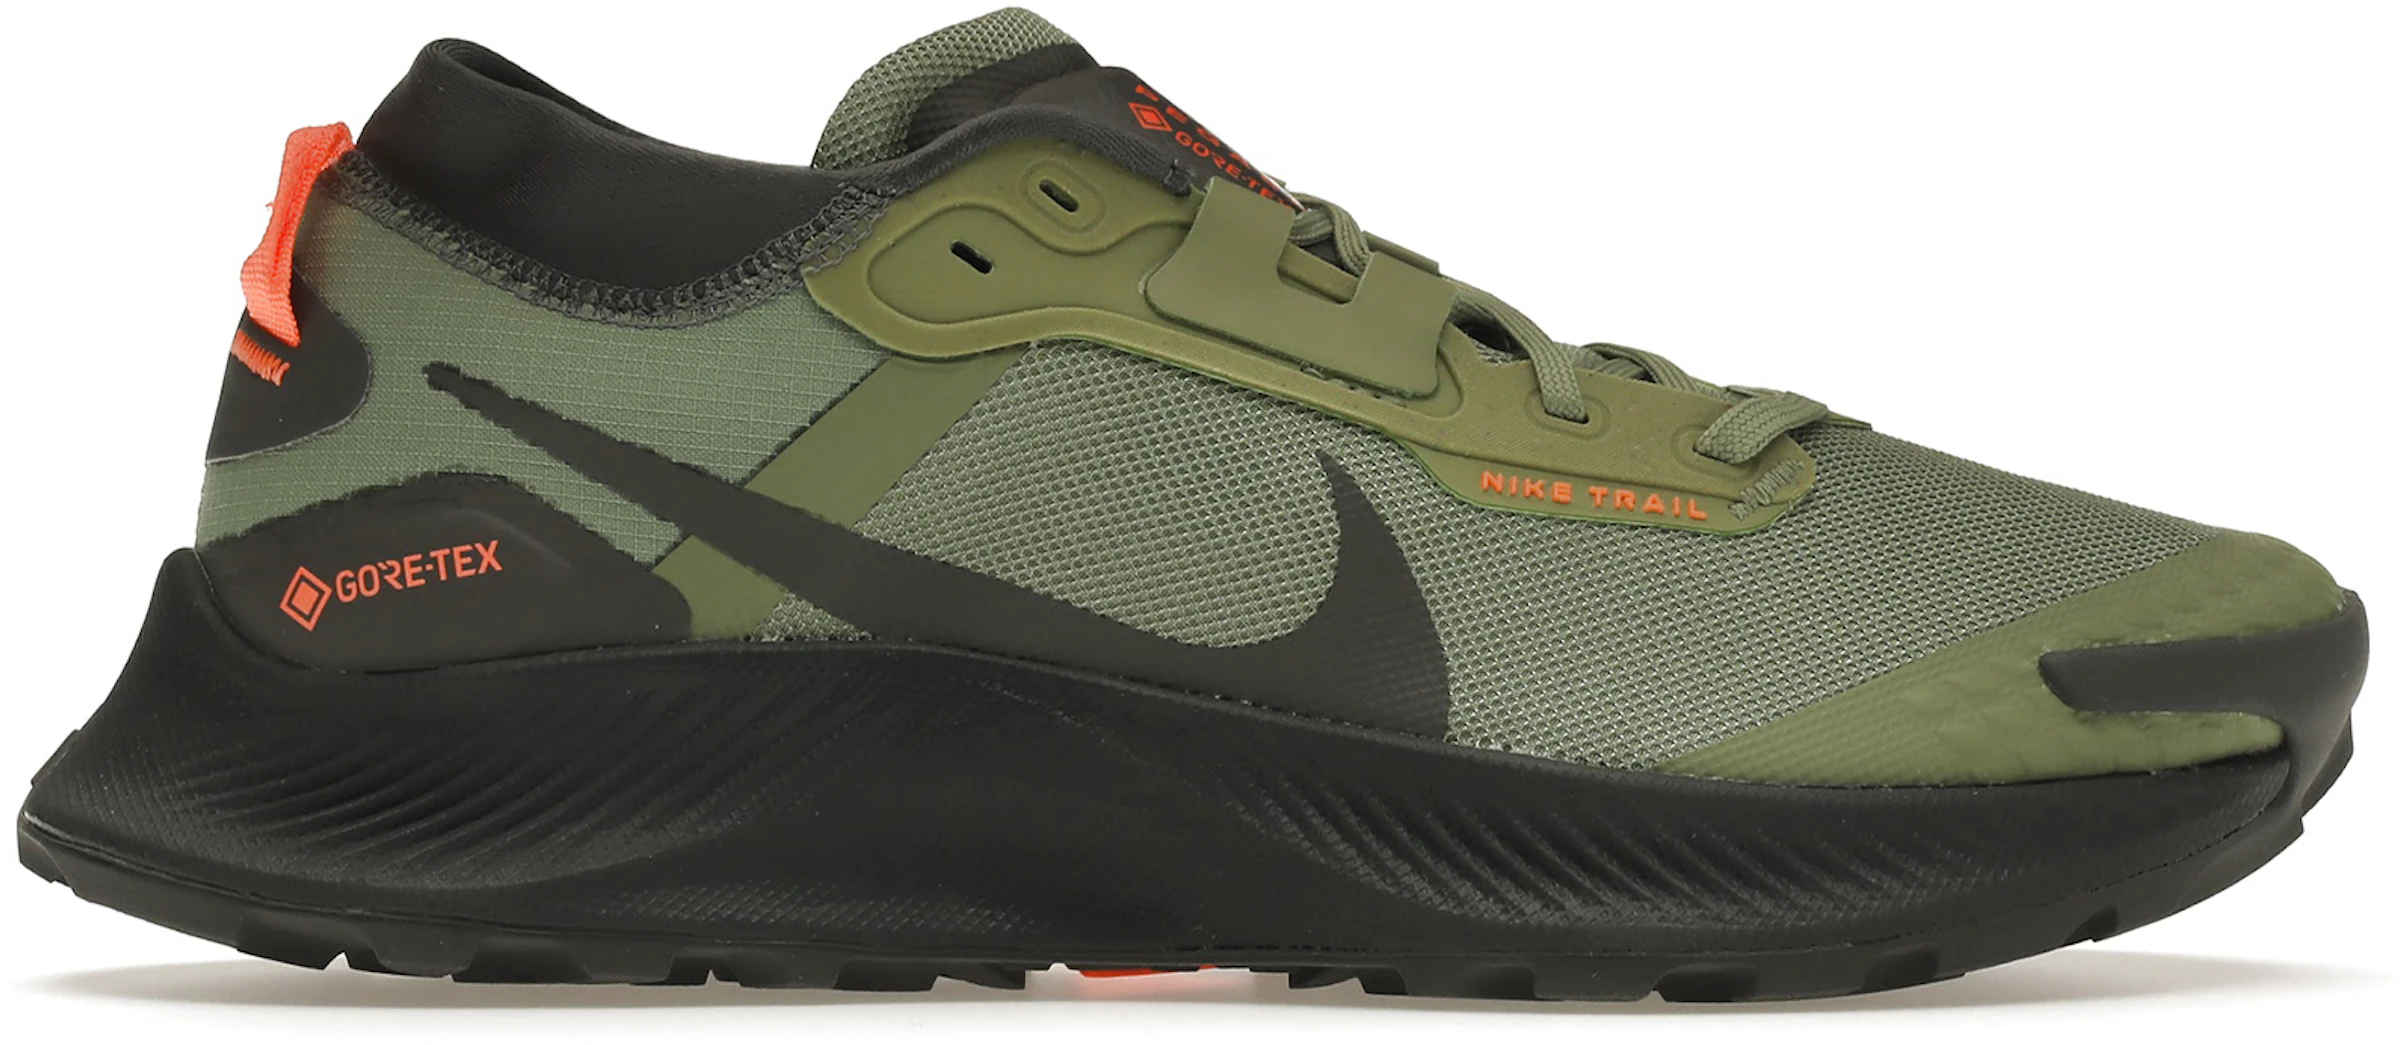 Nike Pegasus 3 Oil Green Iron Grey Total Orange - DO6728-300 - US